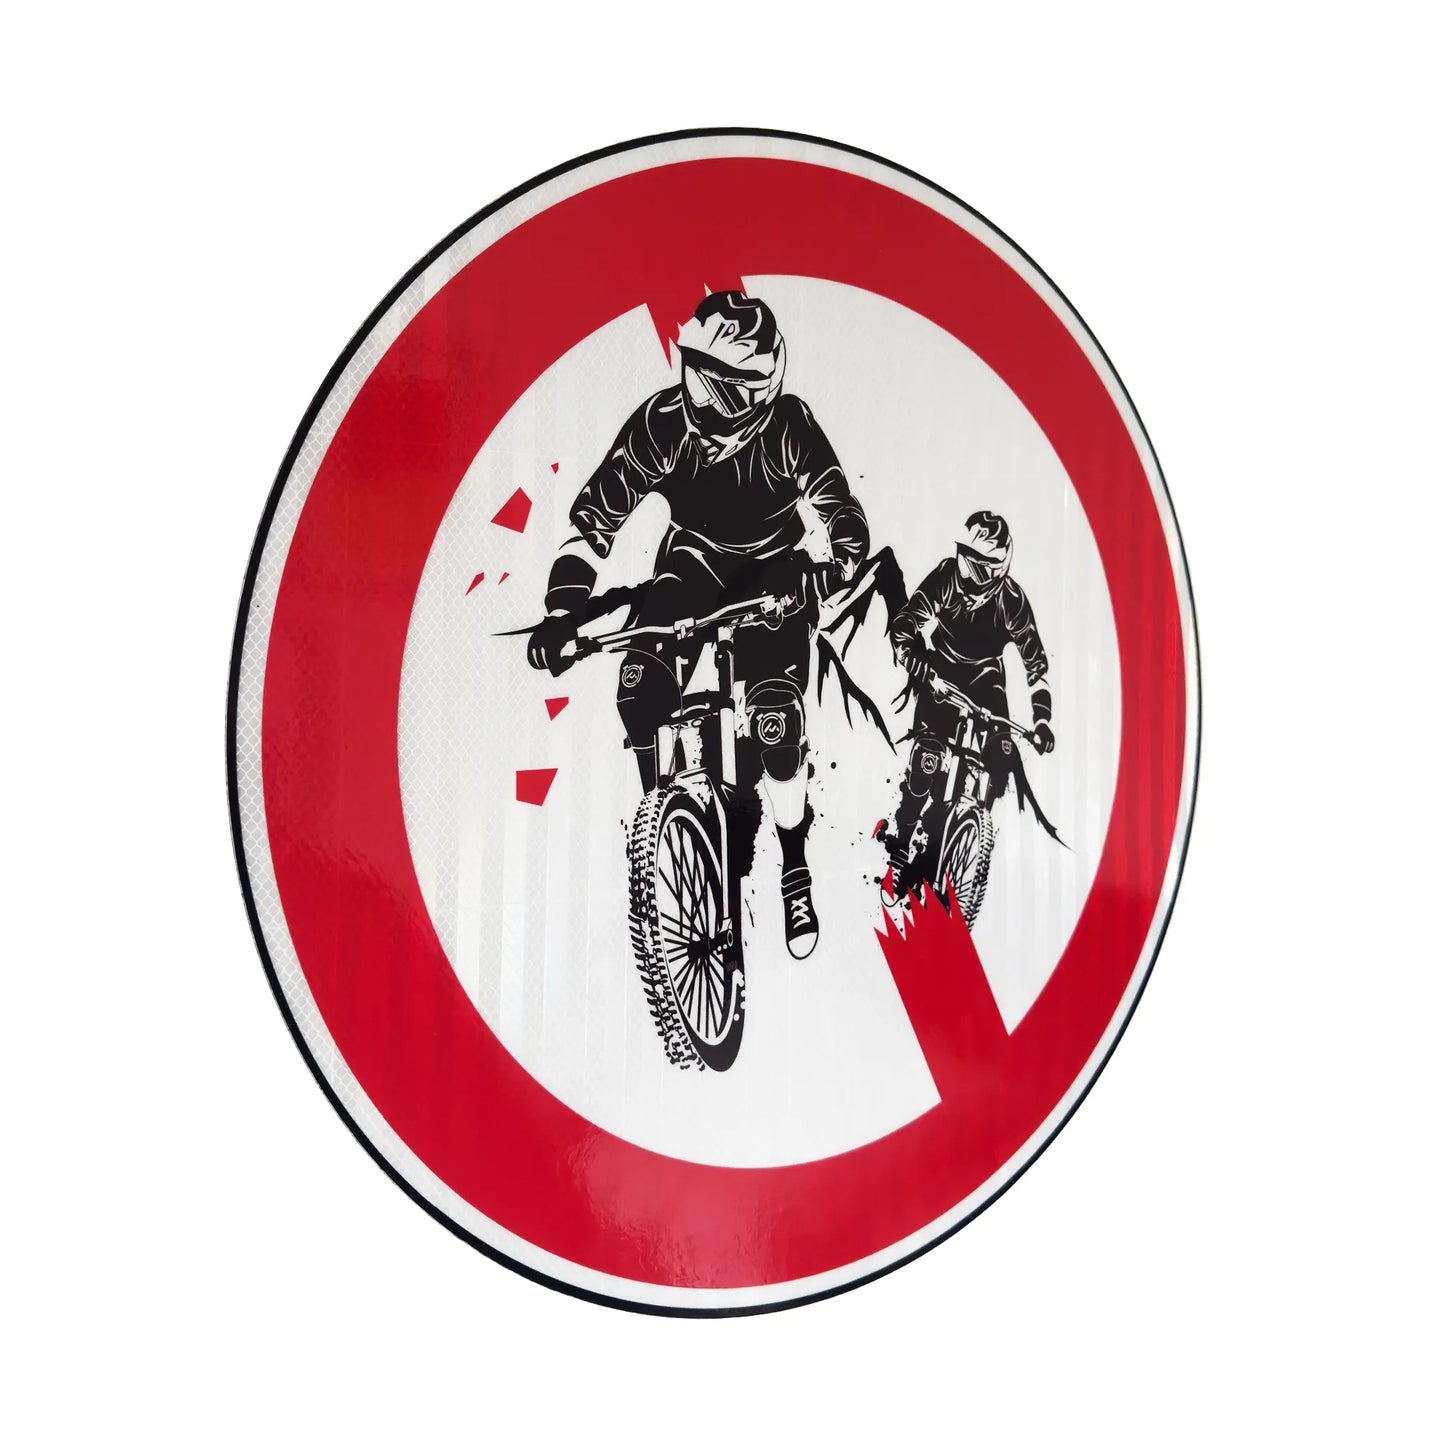 Mountainbike Riders Streetsign